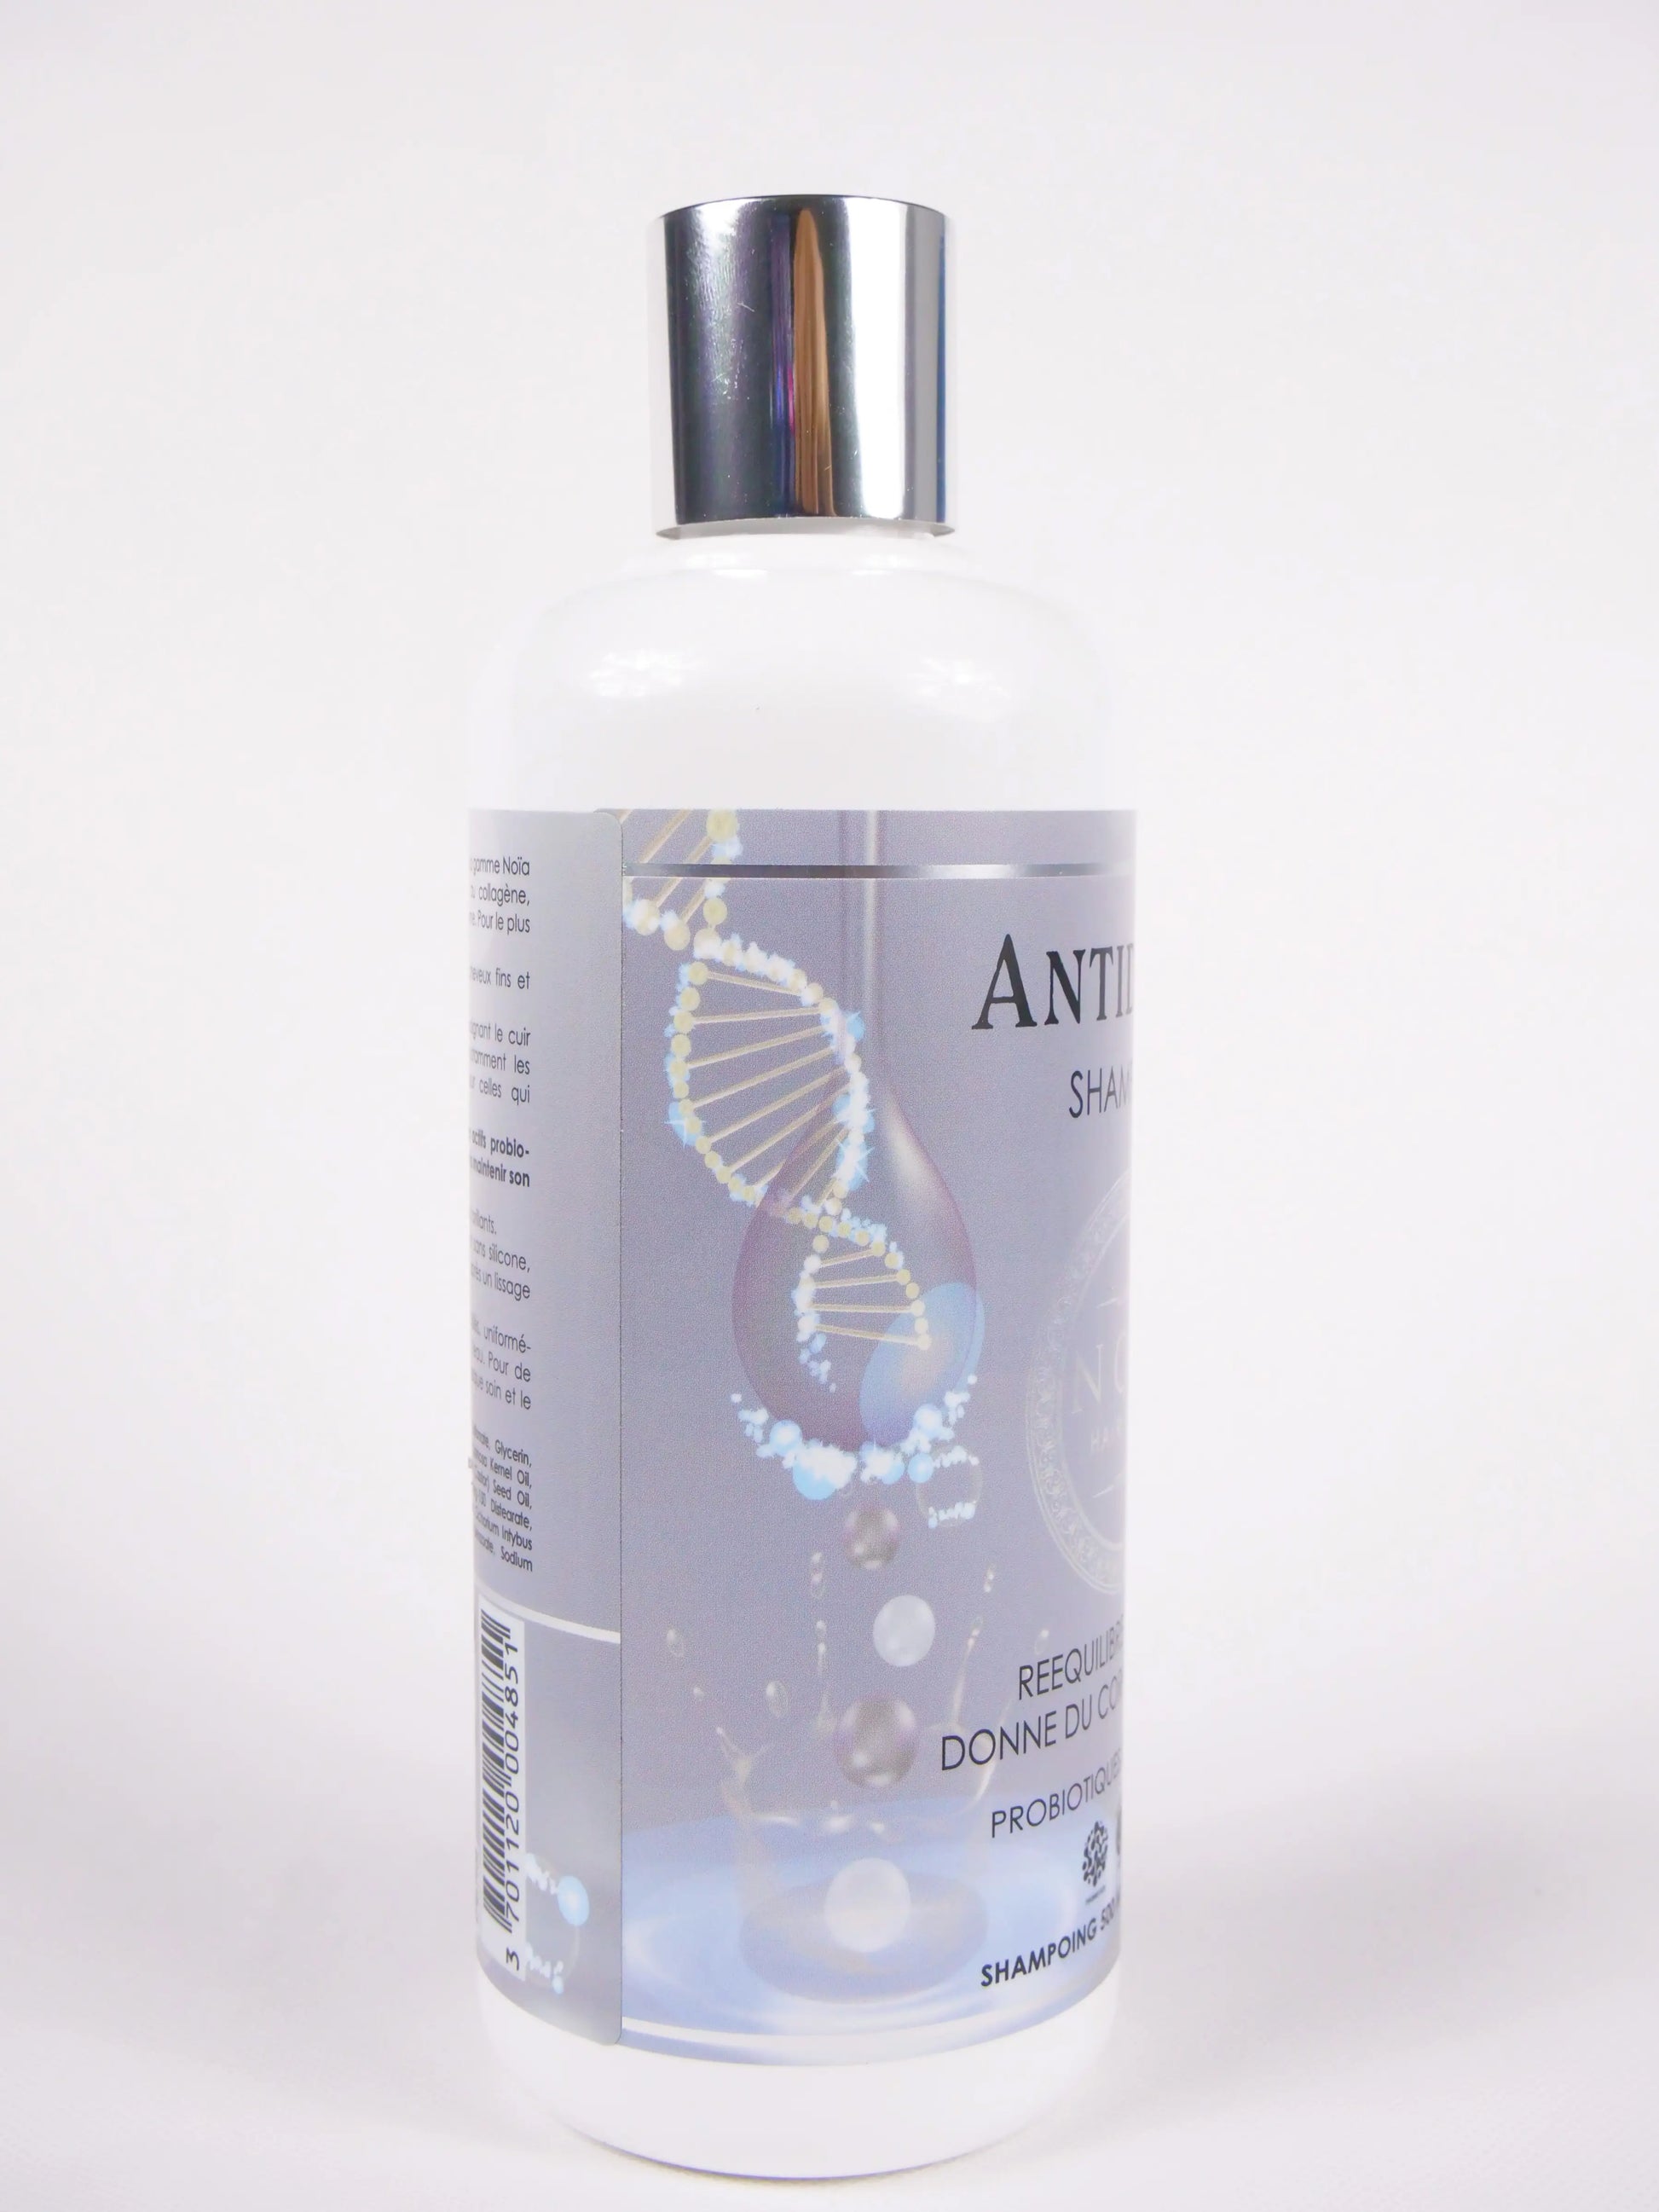 Antidote shampoo with probiotics & collagen - Spellbound